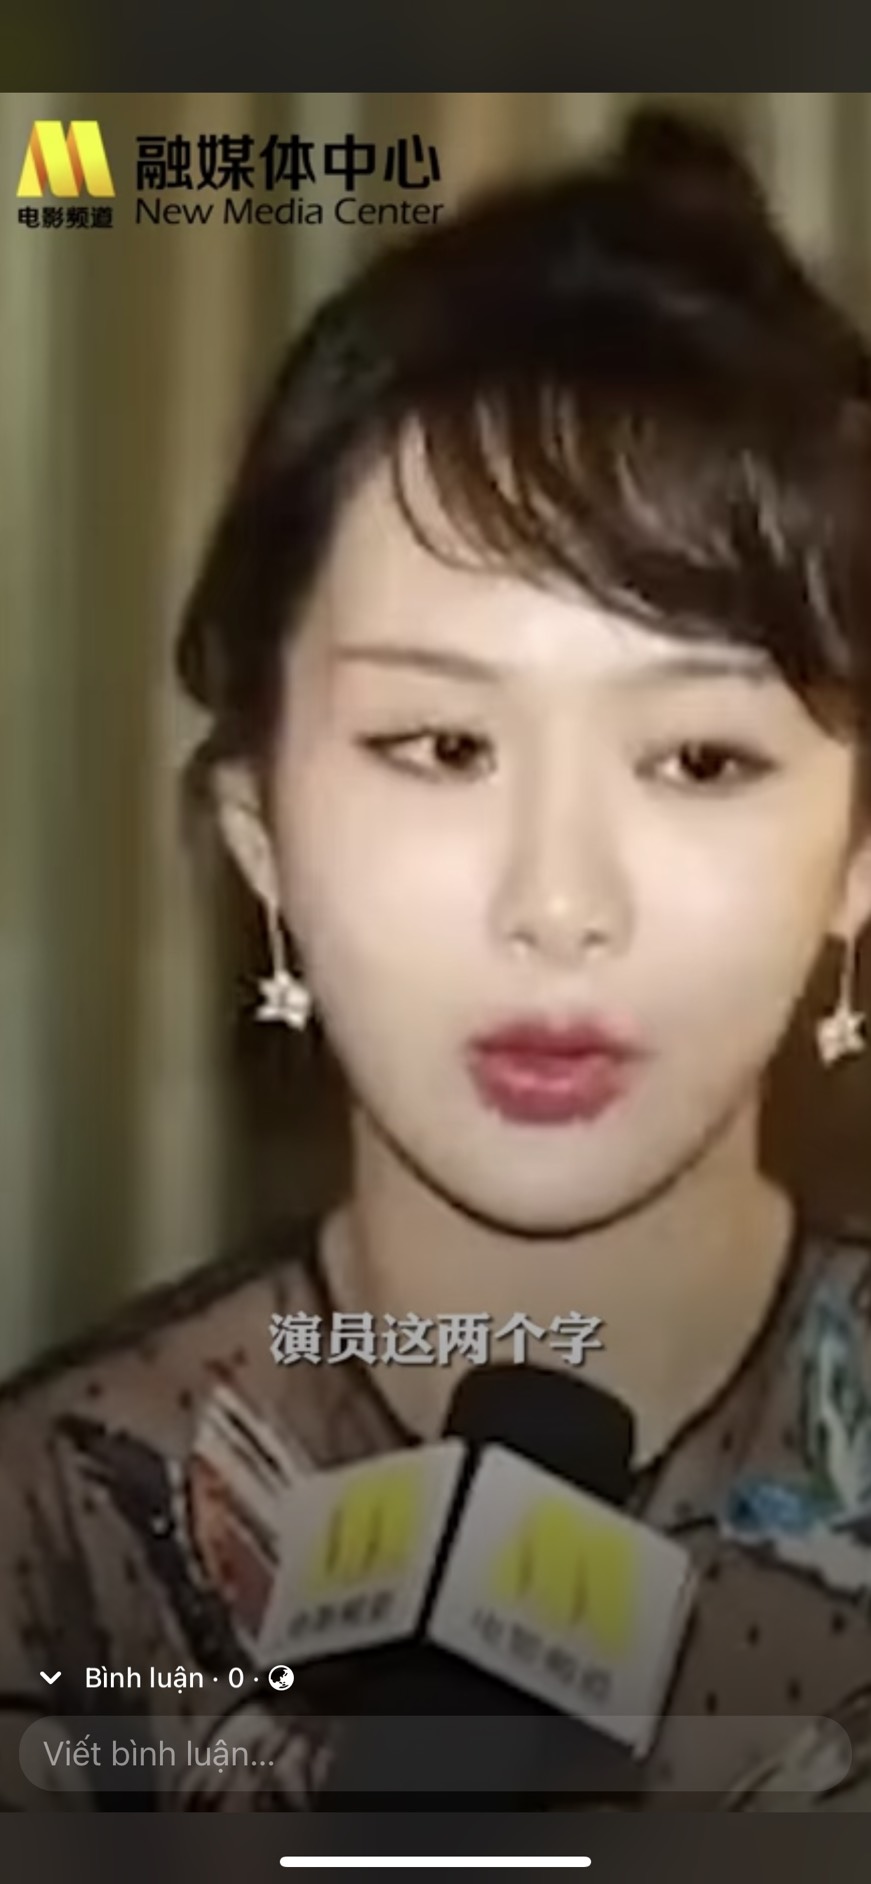 Dương Tử cũng là 1 trong 4 nghệ sĩ xuất hiện trong video này